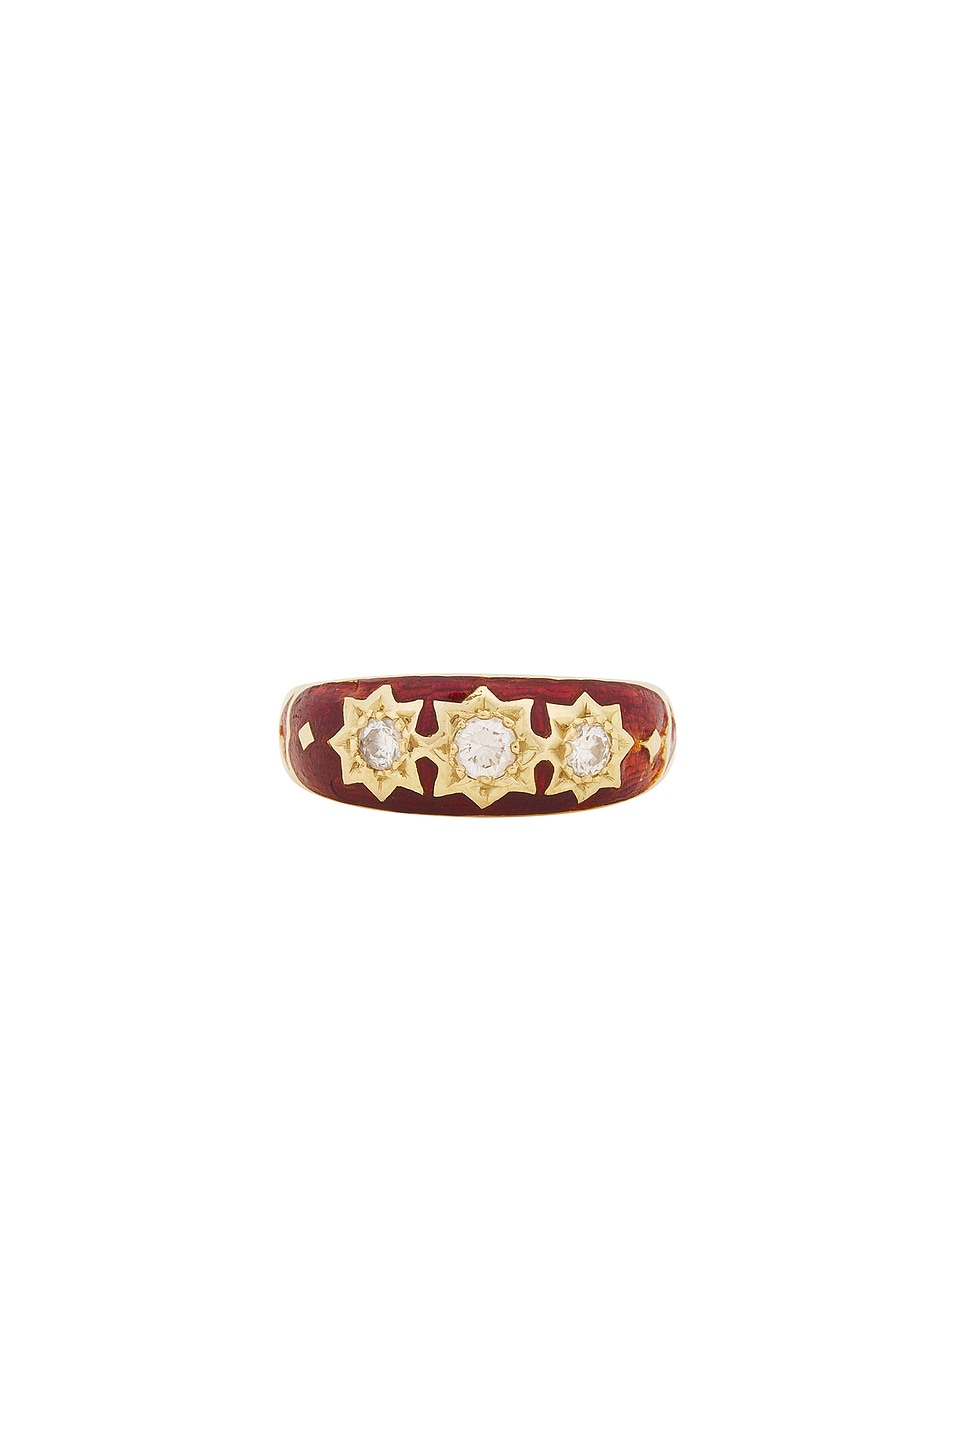 Image 1 of 23CARAT Vintage Diamond Enamel Starburst Trilogy Ring in Red Enamel, Diamond, & 18k Yellow Gold